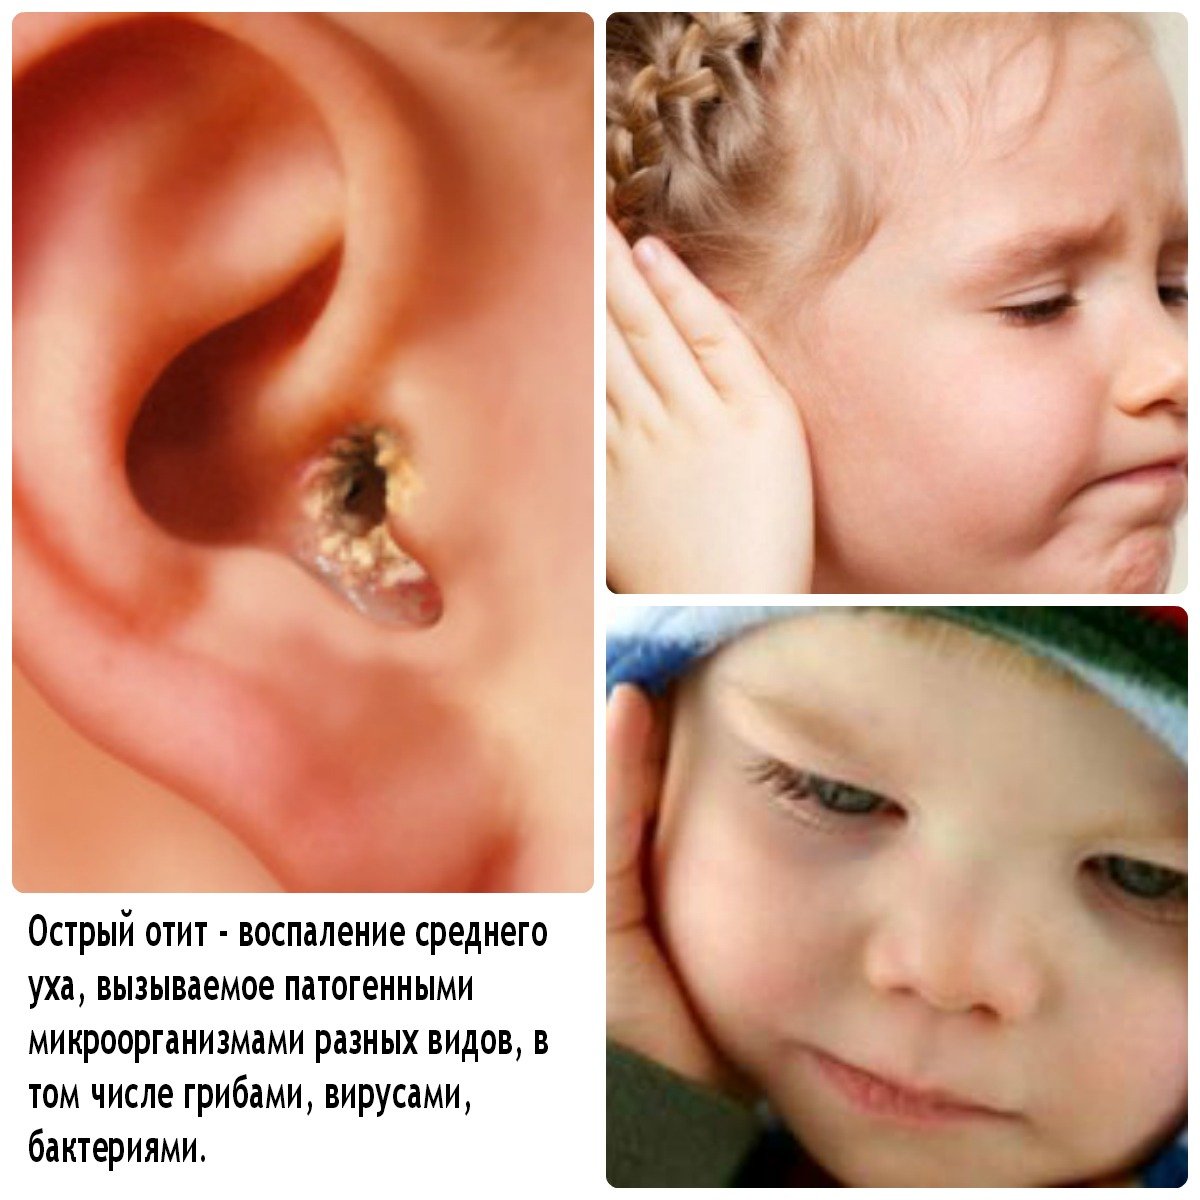 ostriysredniyotitudeteyfoto C2F9716C - Гнойный отит у ребенка: фото, симптомы, чем лечить и последствия